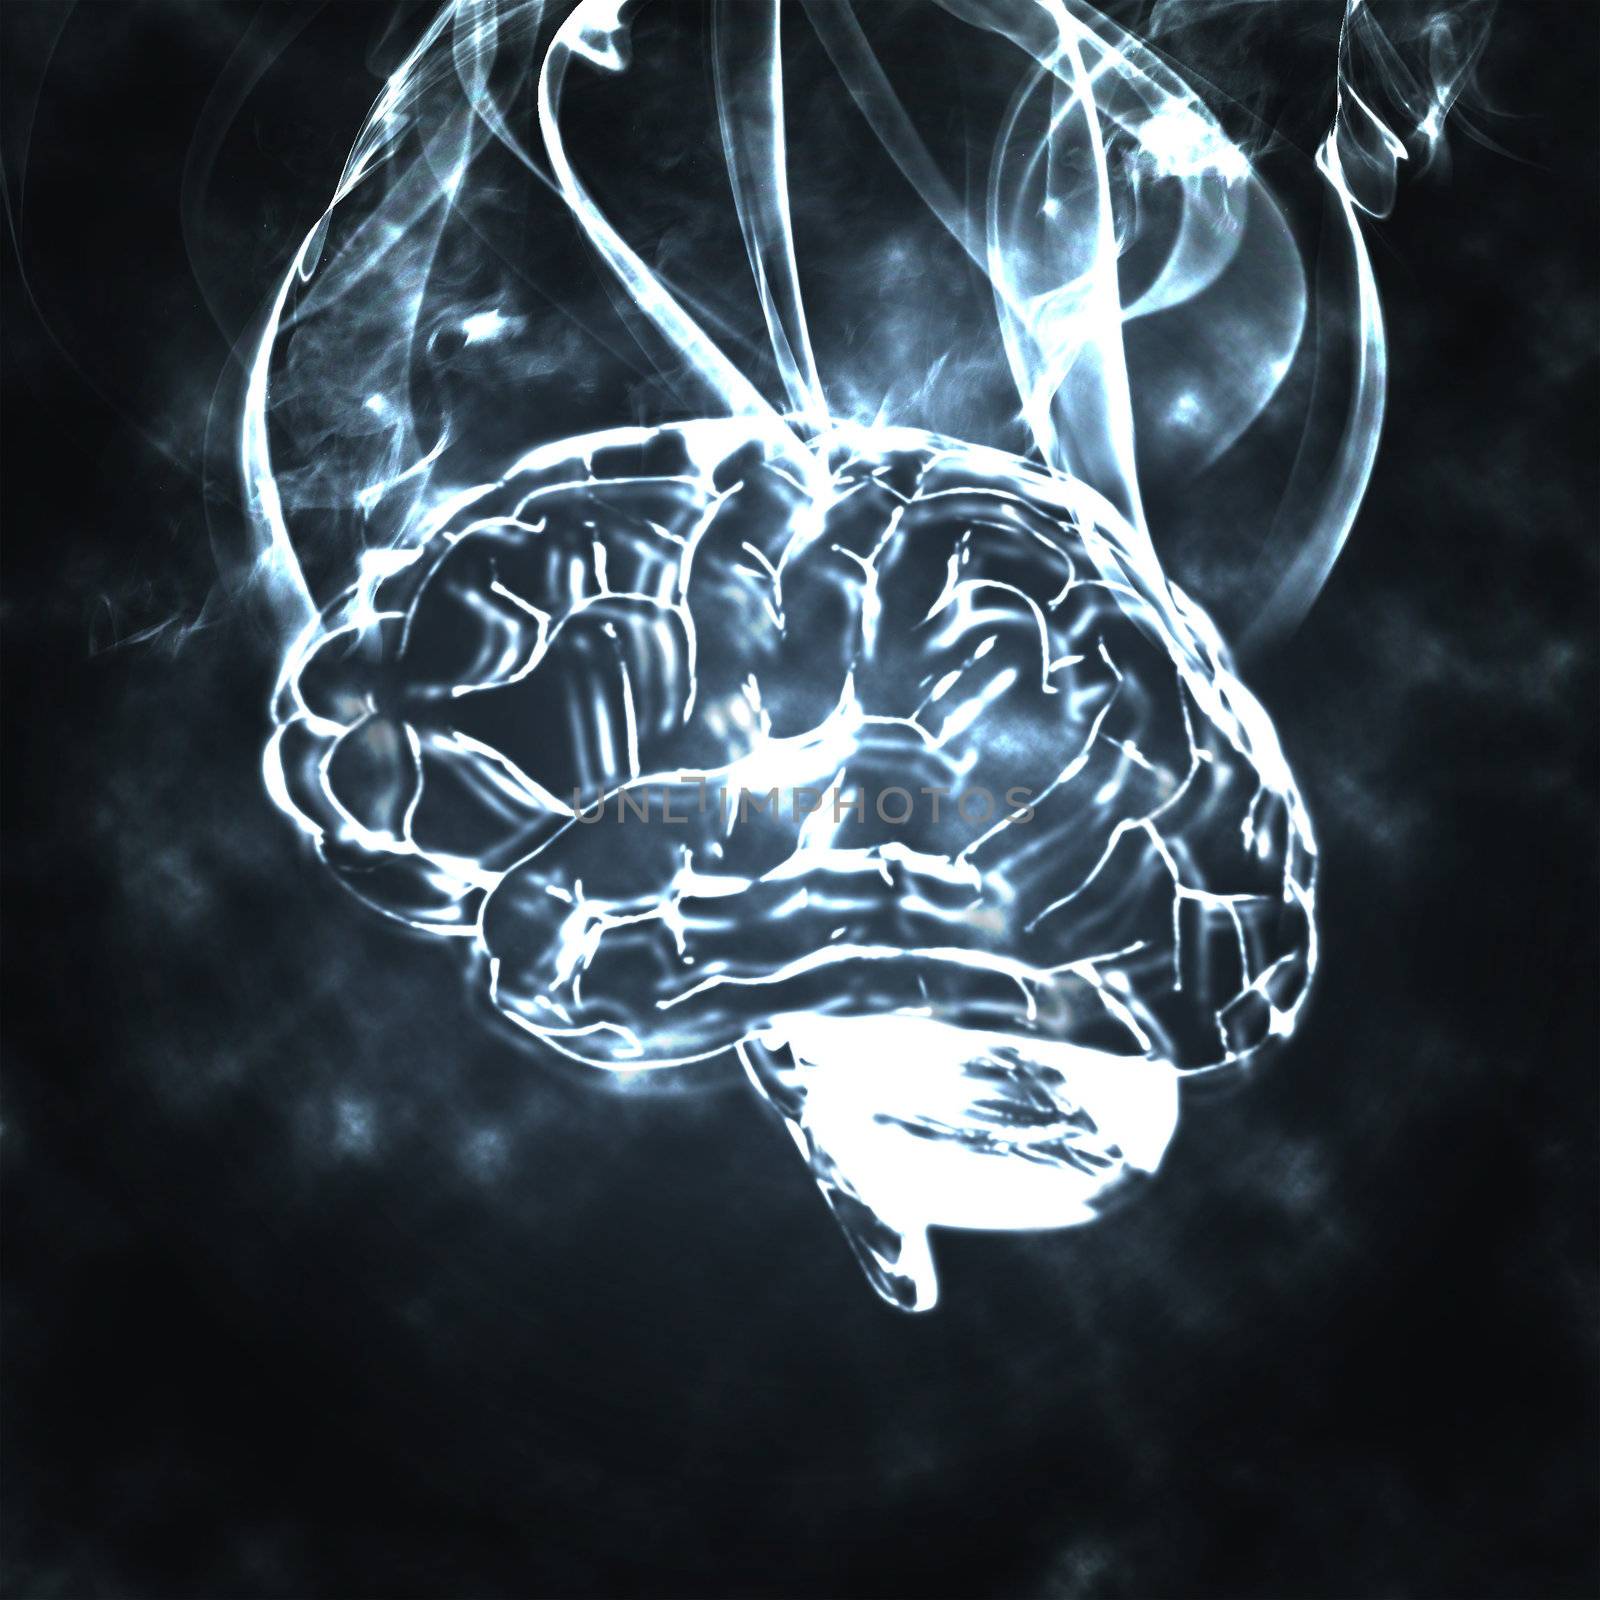 illustration of the burning humas brain in smoke